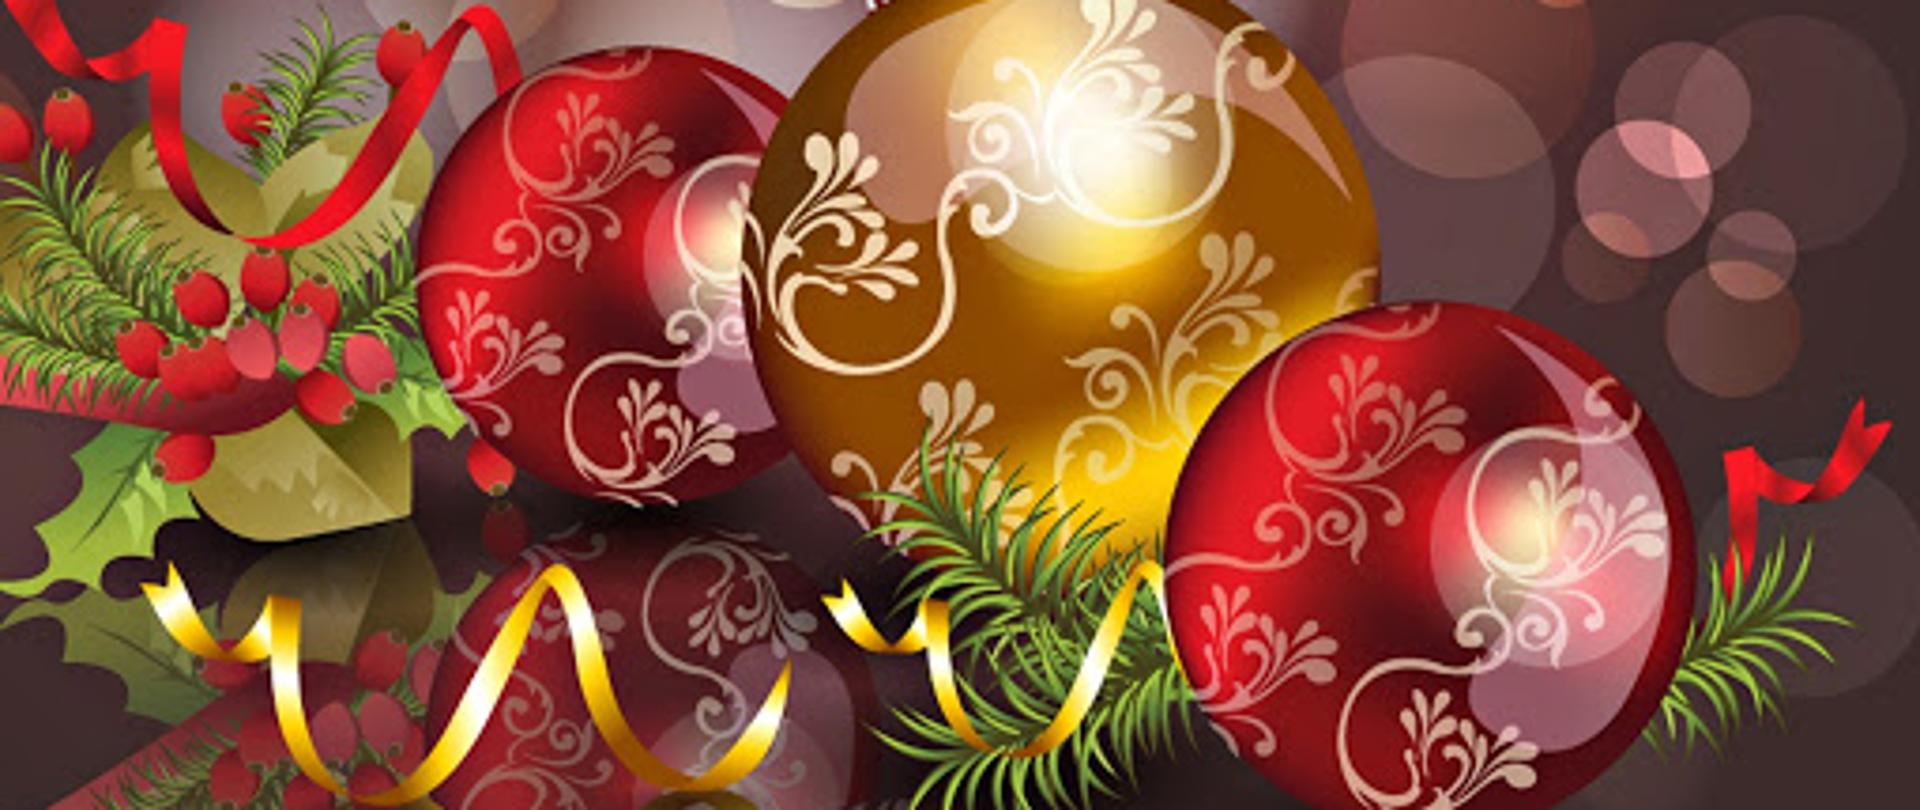 Zdjęcie przedstawia dekorację świąteczną, kolorowe bombki oraz gałązki choinki na ciemnym tle